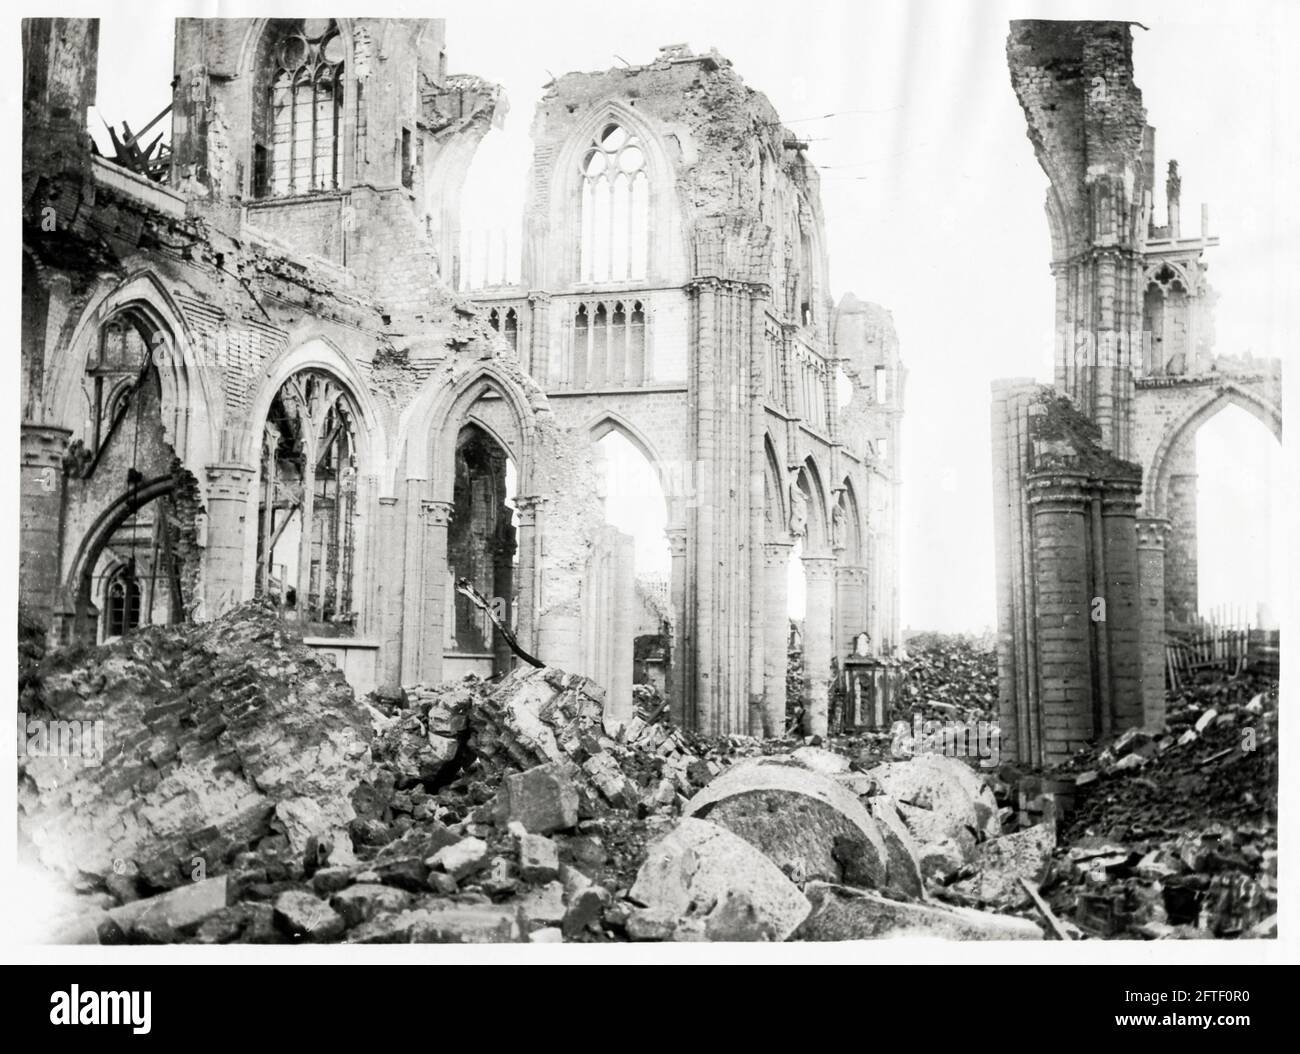 Première Guerre mondiale, première Guerre mondiale, Front occidental - intérieur de la cathédrale en ruines, Ypres, Flandre Occidentale, Belgique Banque D'Images